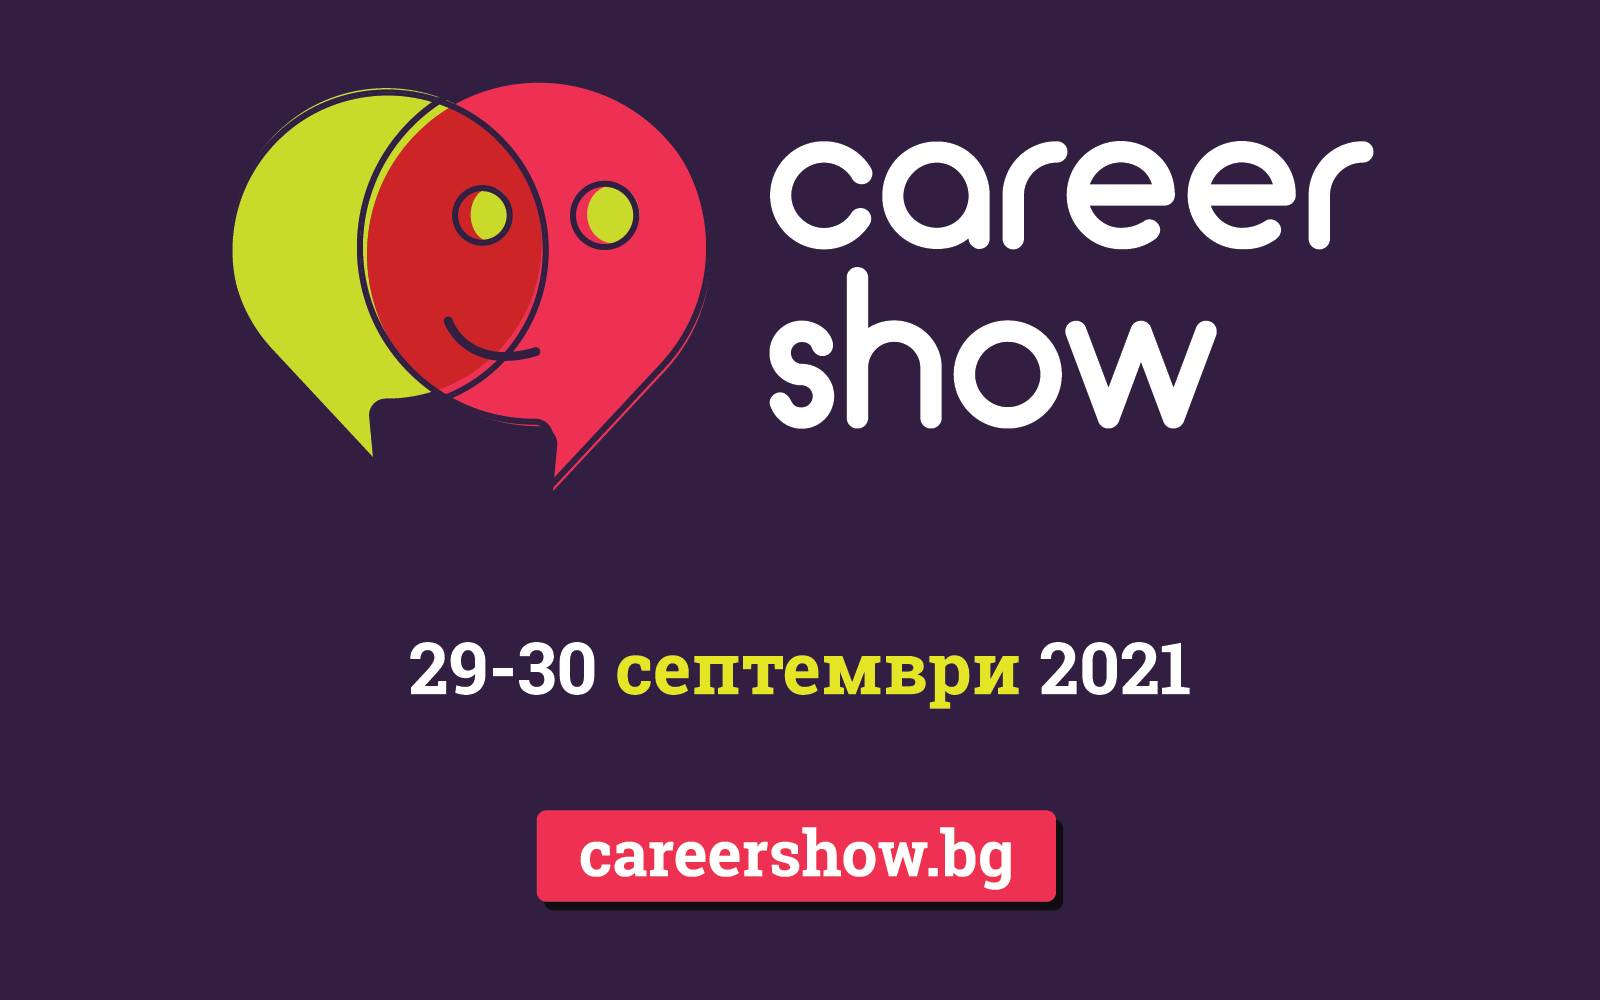 Включете се във водещото кариерно изложение Career Show 2021